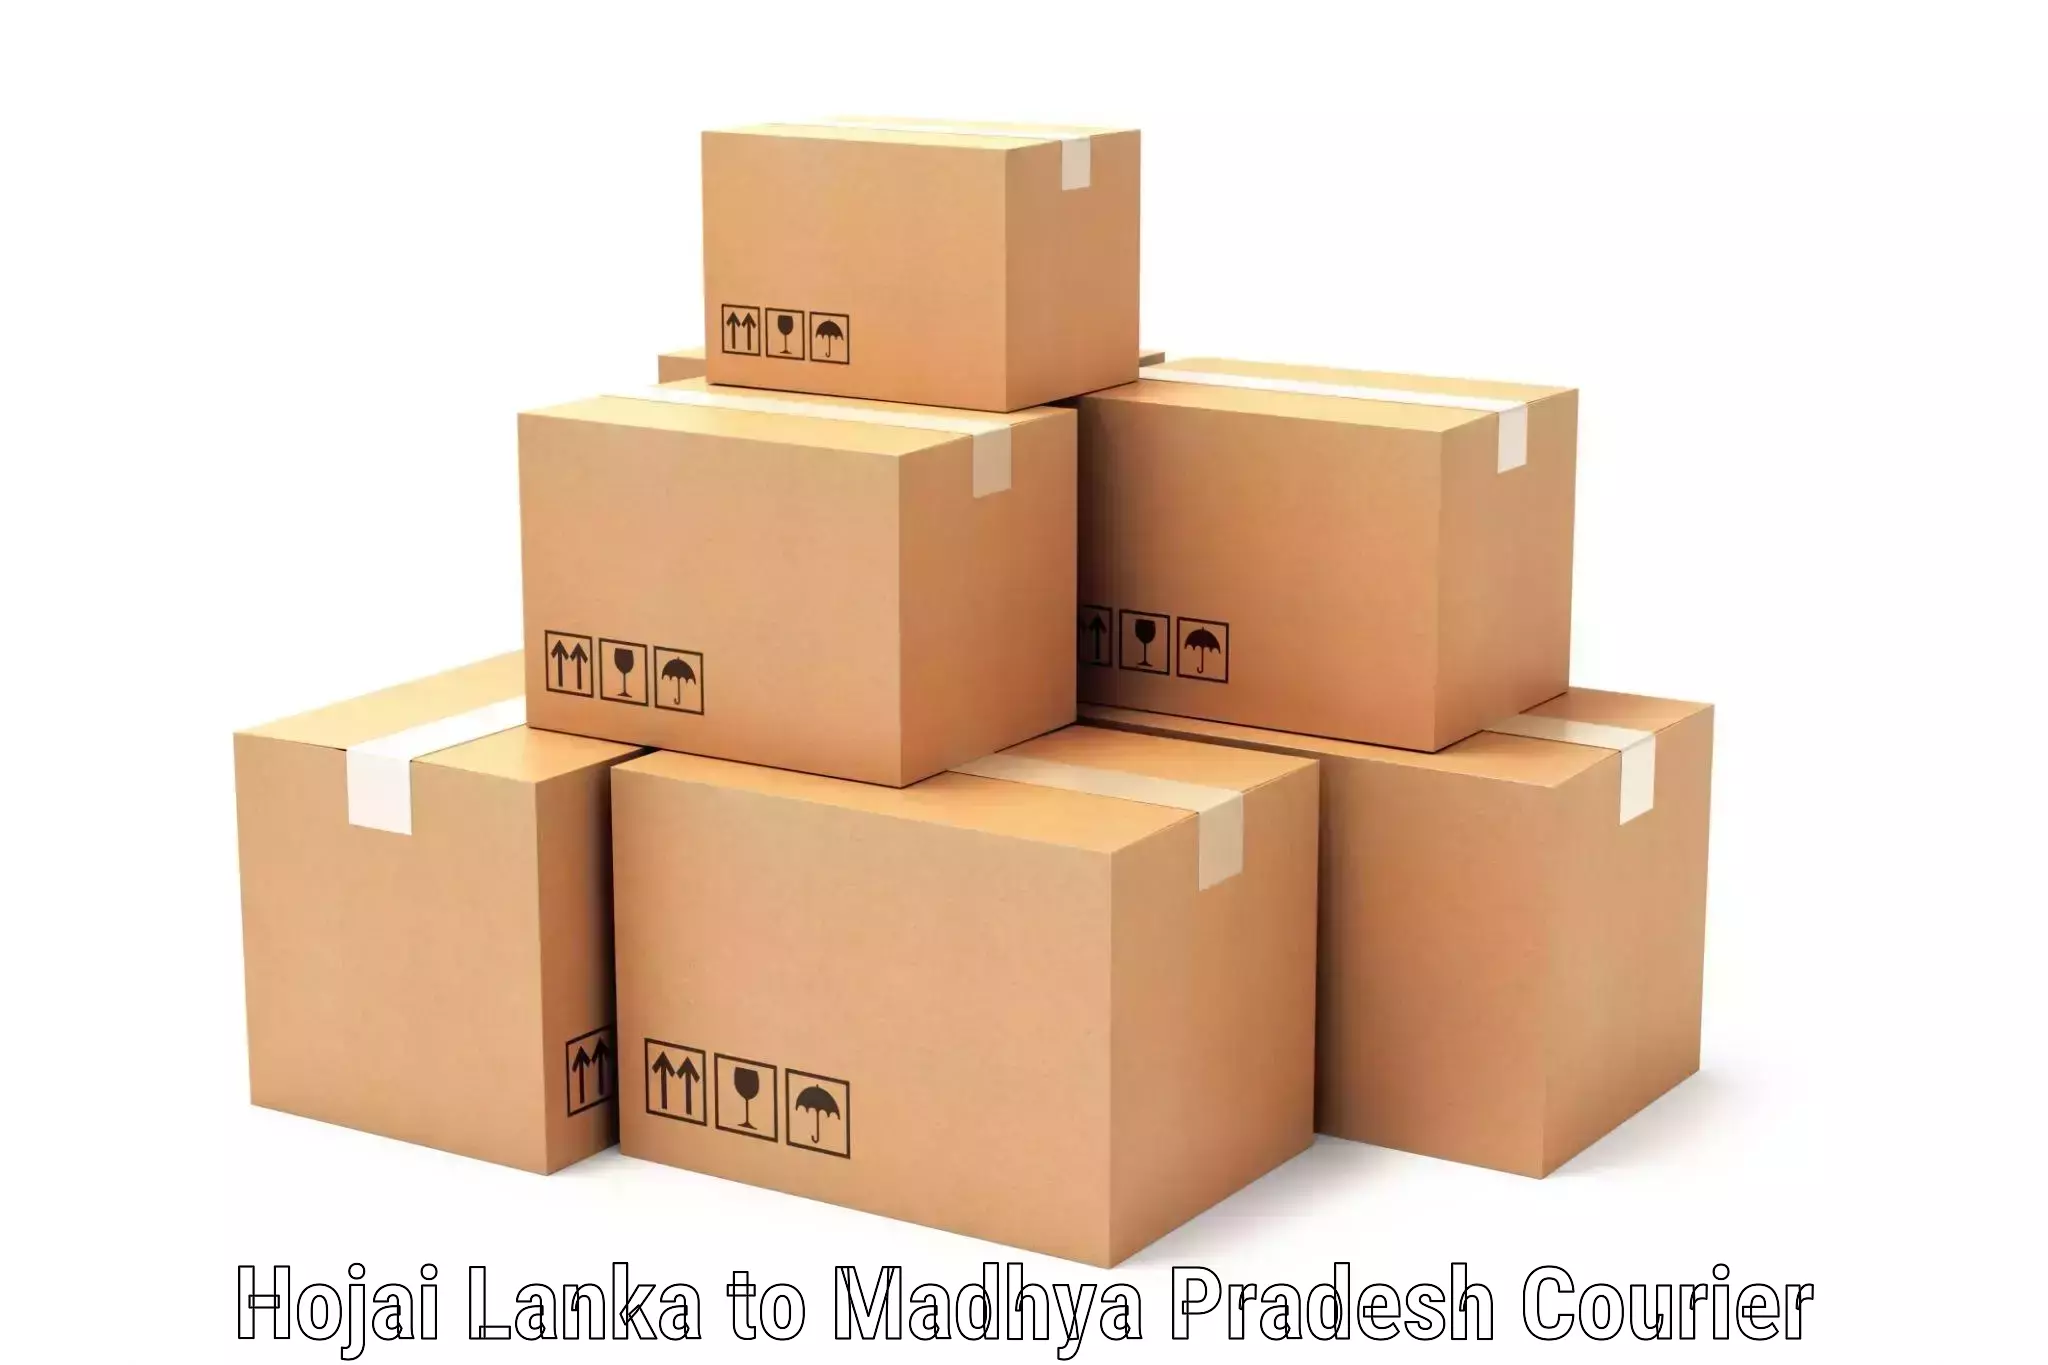 Affordable parcel service Hojai Lanka to Nainpur